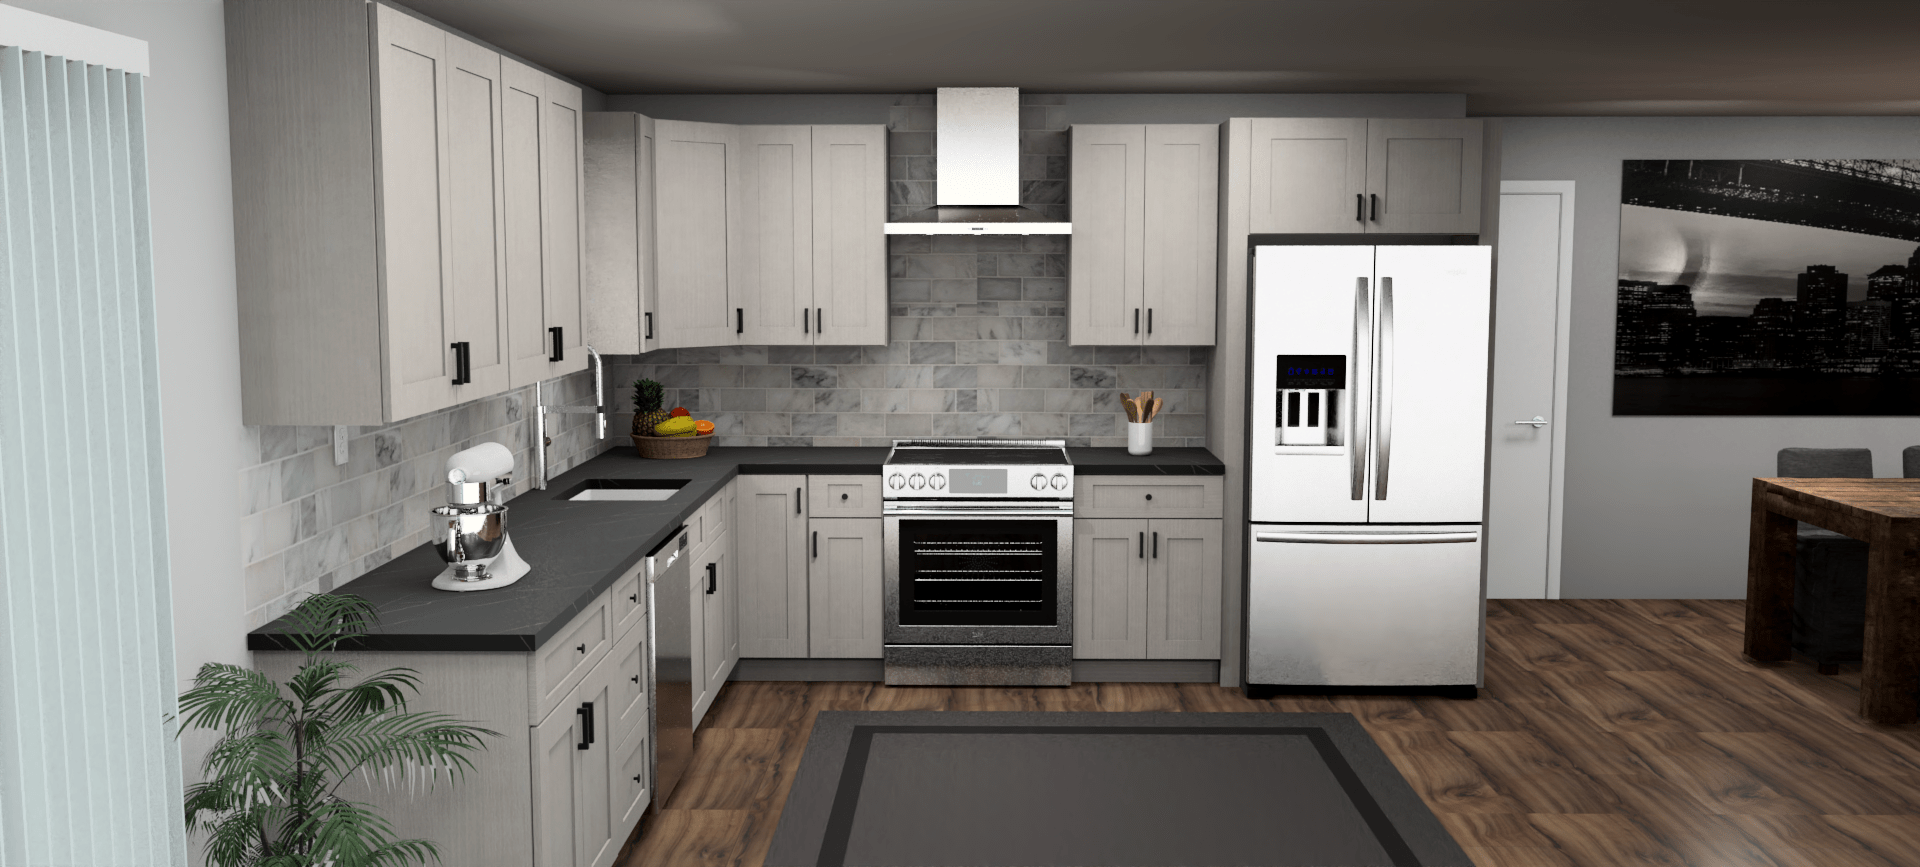 Fabuwood Allure Galaxy Horizon 12 x 12 L Shaped Kitchen Front Layout Photo